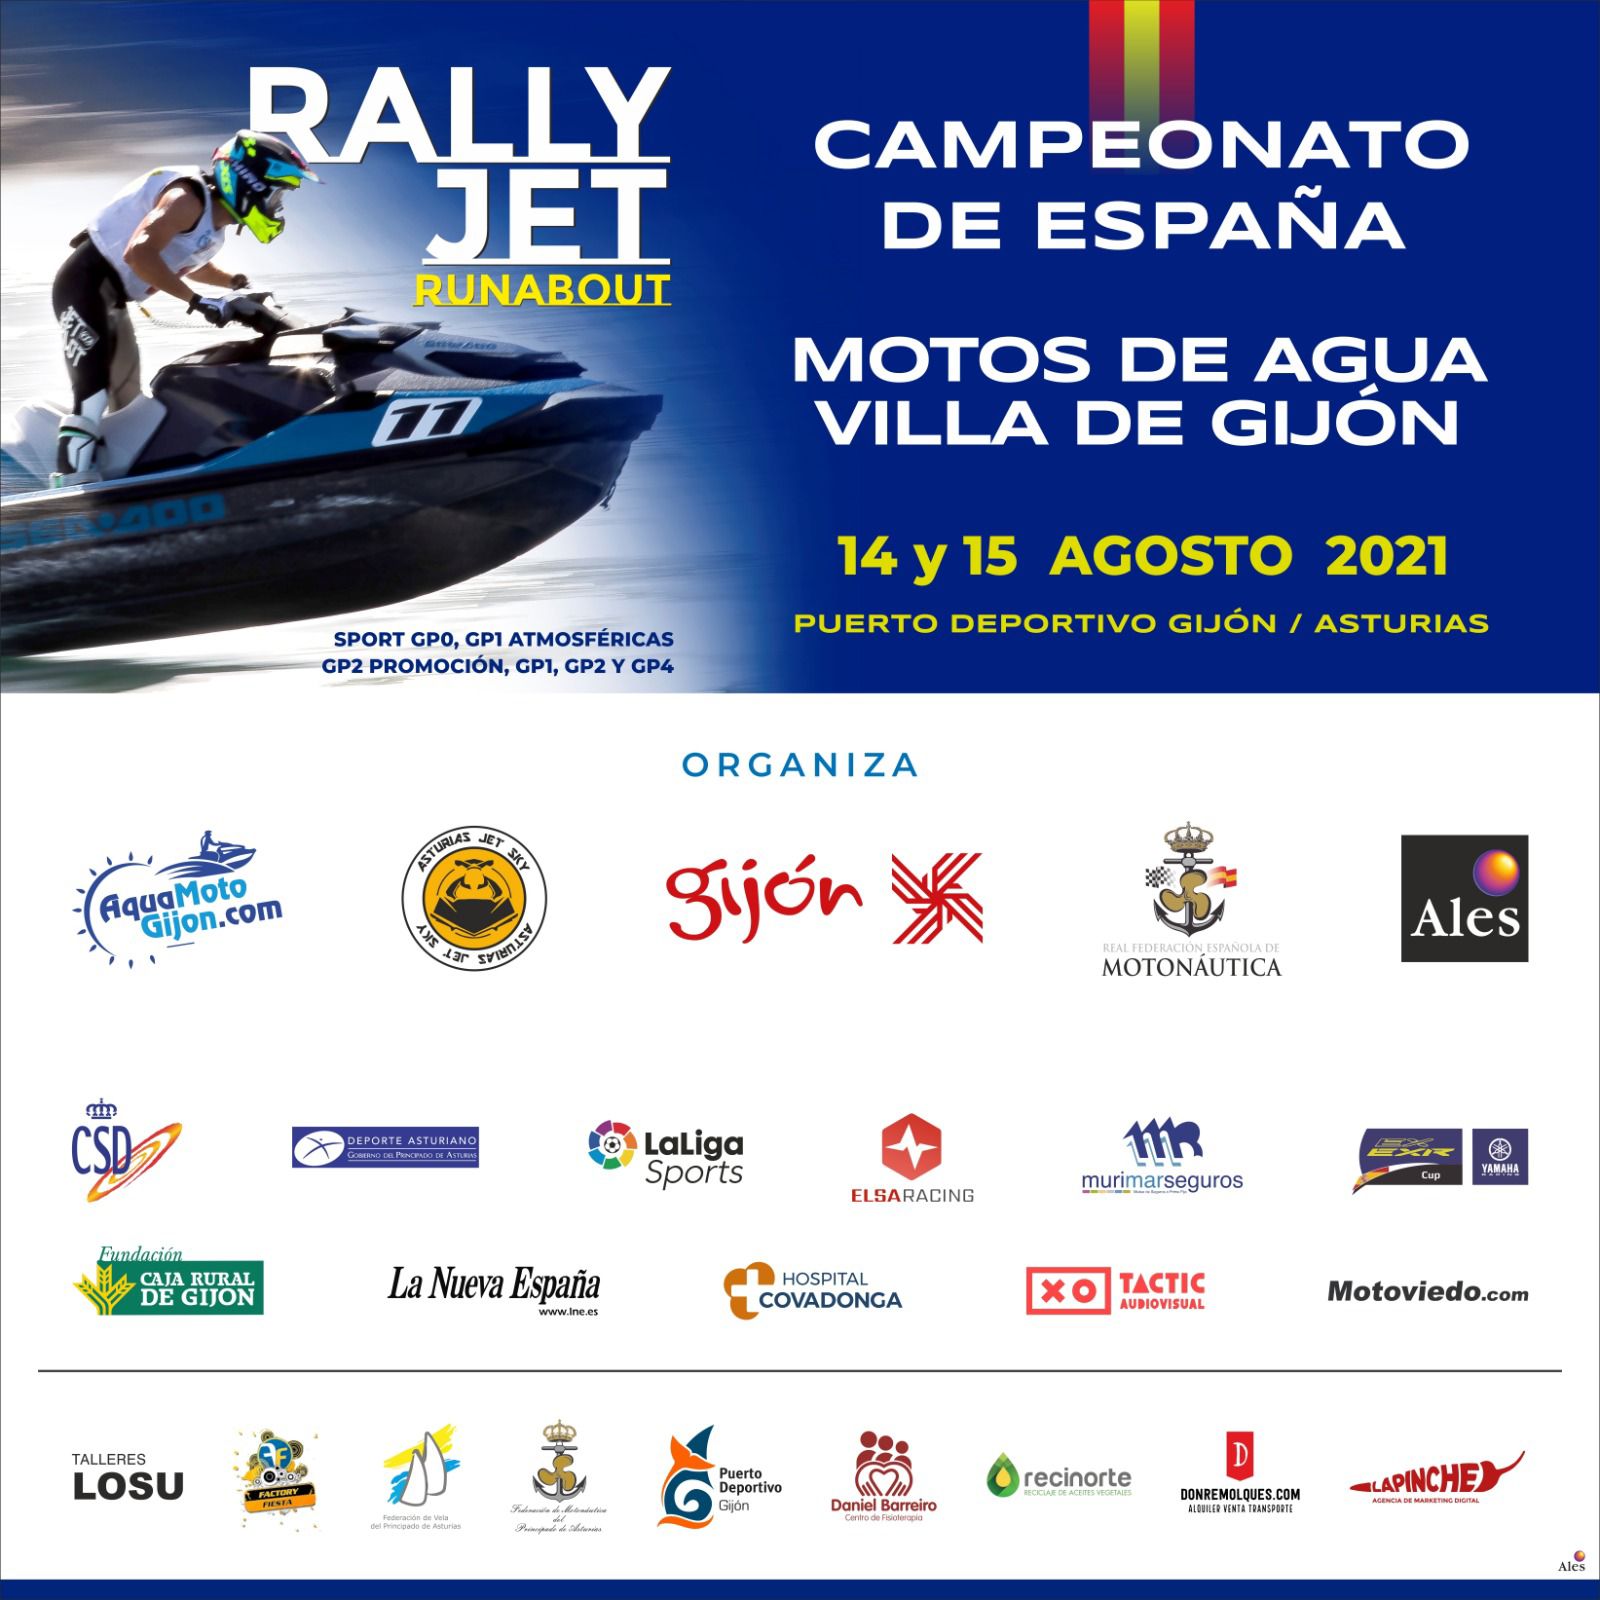 Campeonato de España de Rally Jet